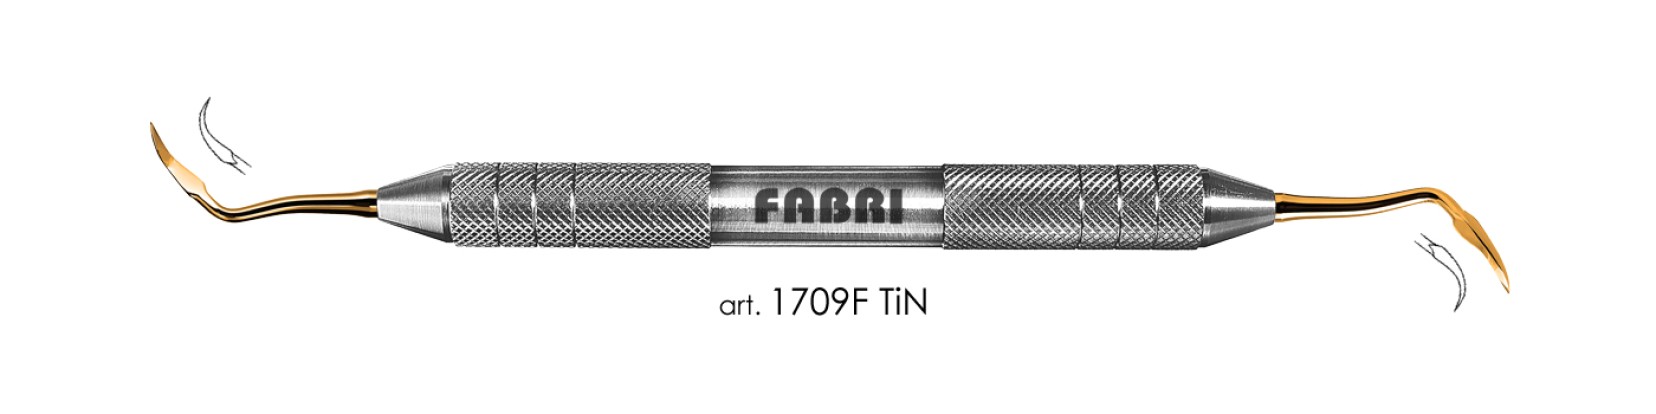 ФАБРИ Fabri  - Инструмент для снятия зубных отложений (арт. 1709 F TIN)